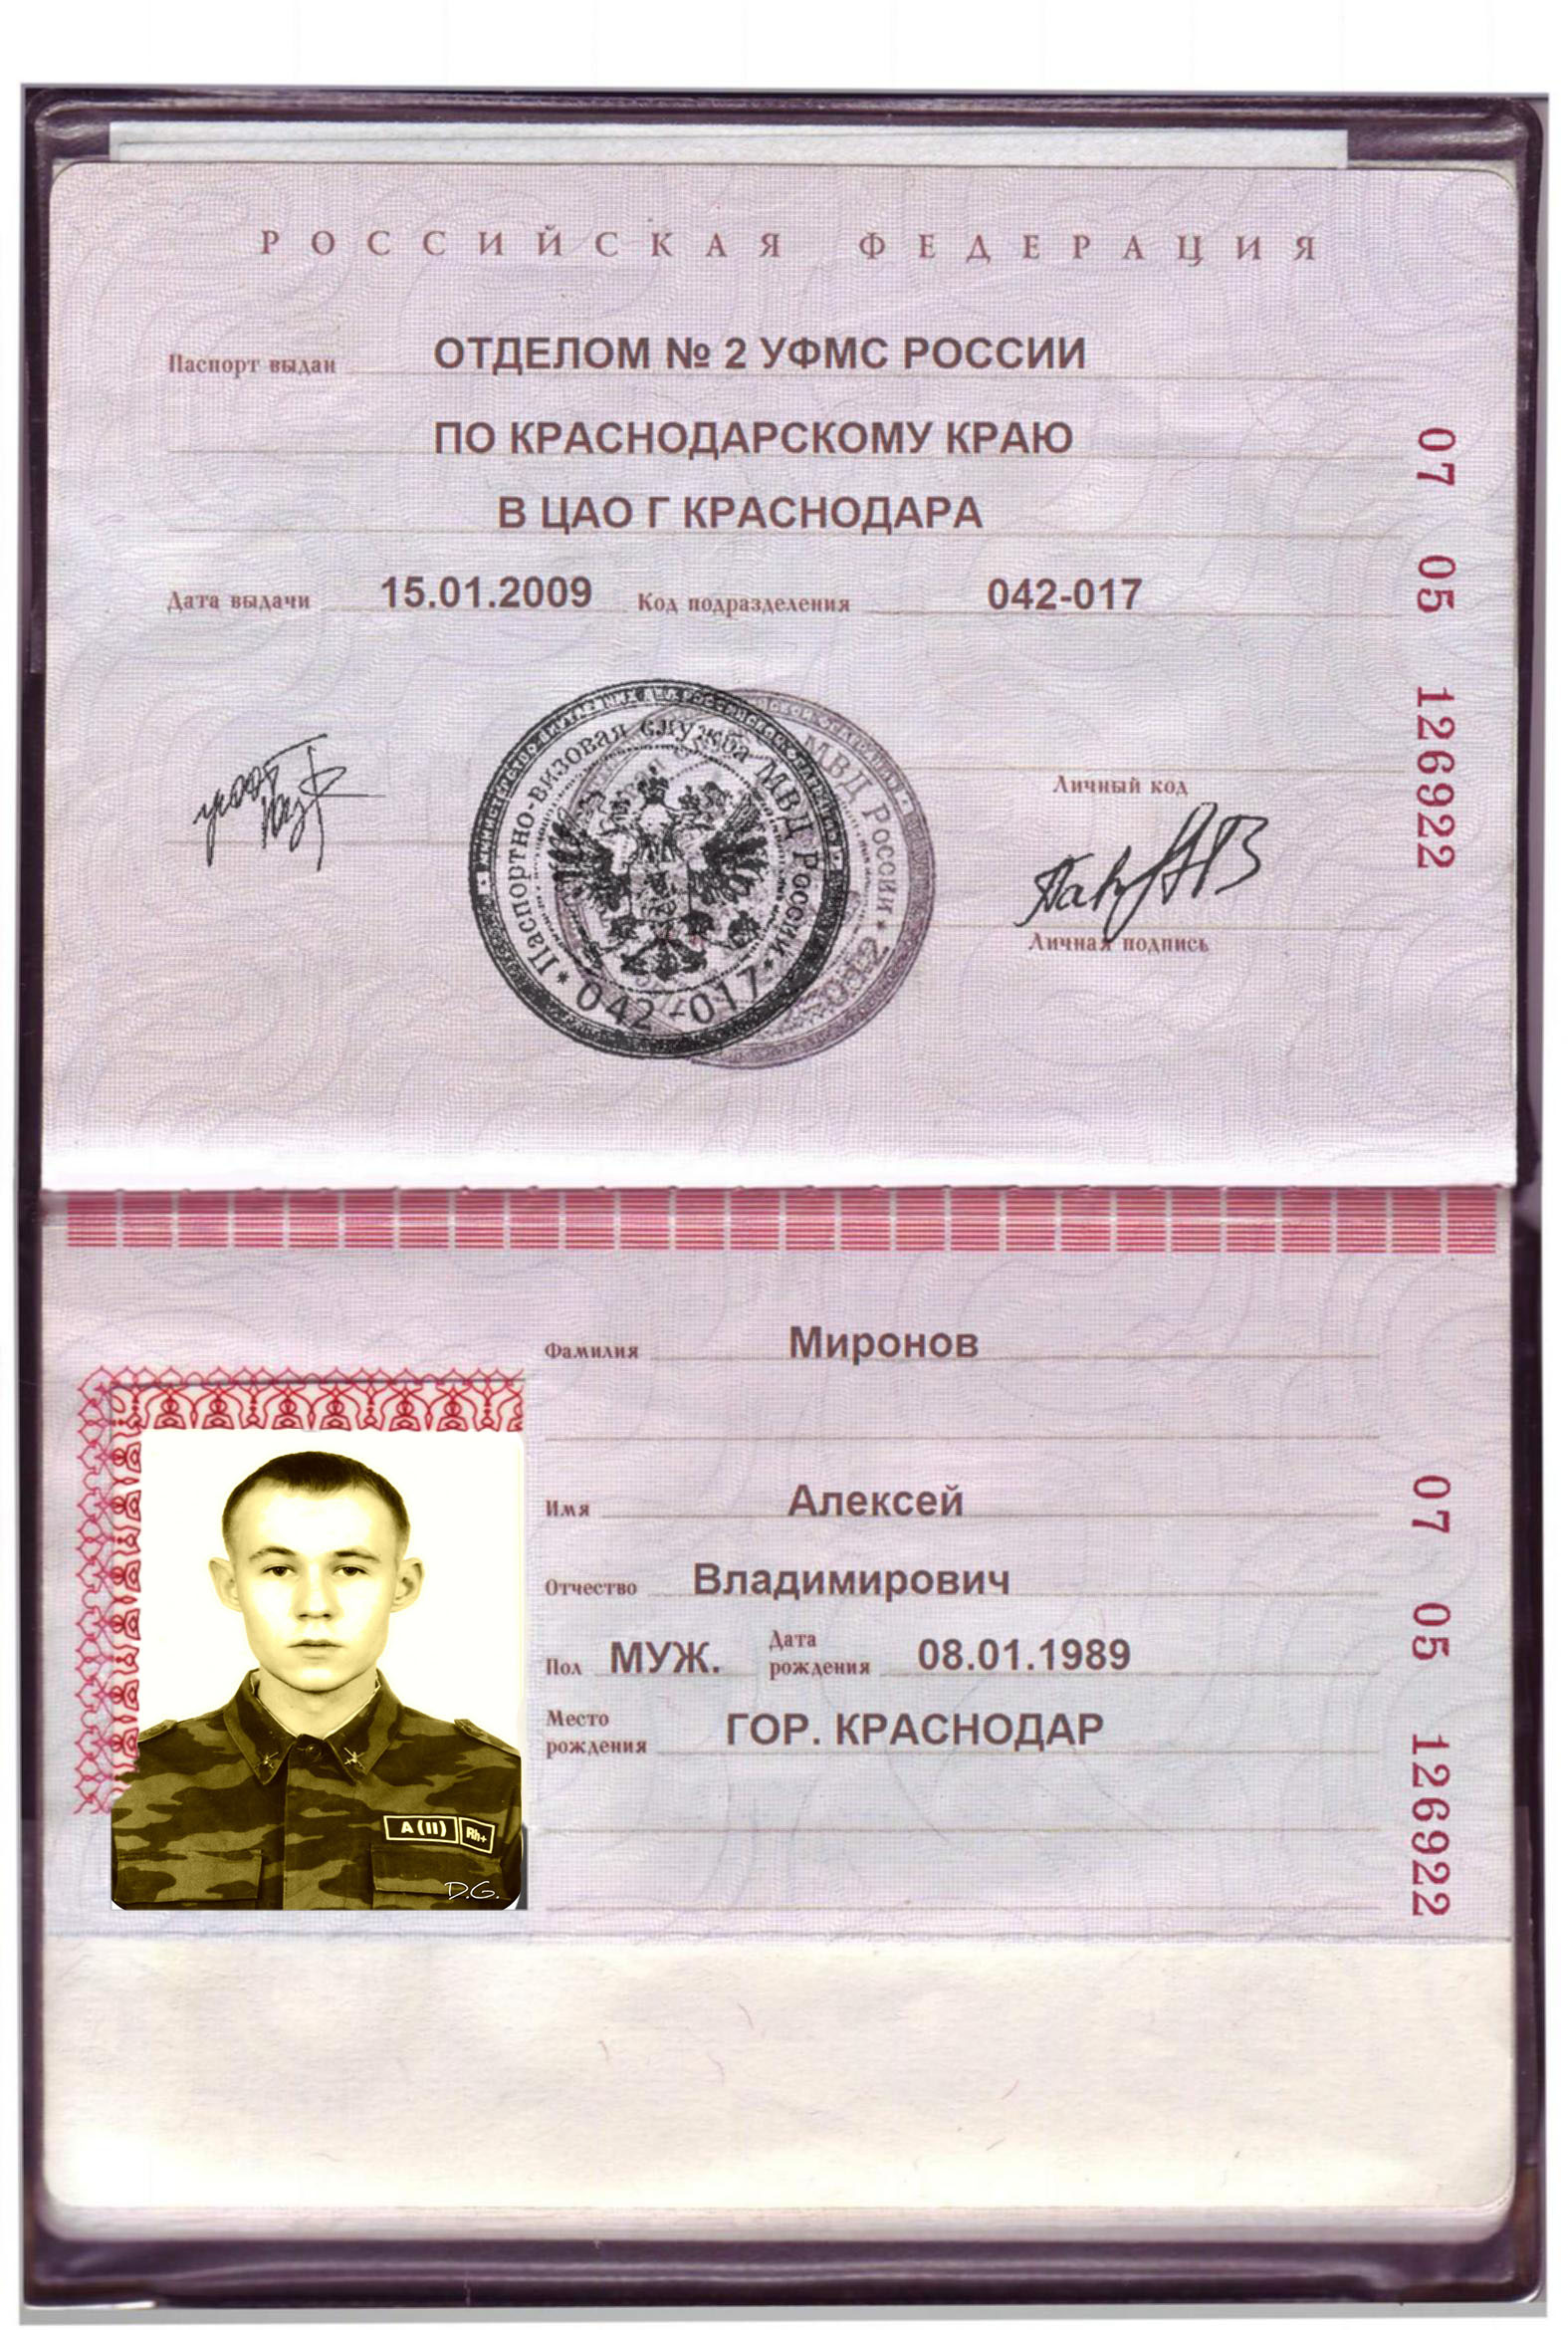 Печать Паспортно визовой службы МВД России